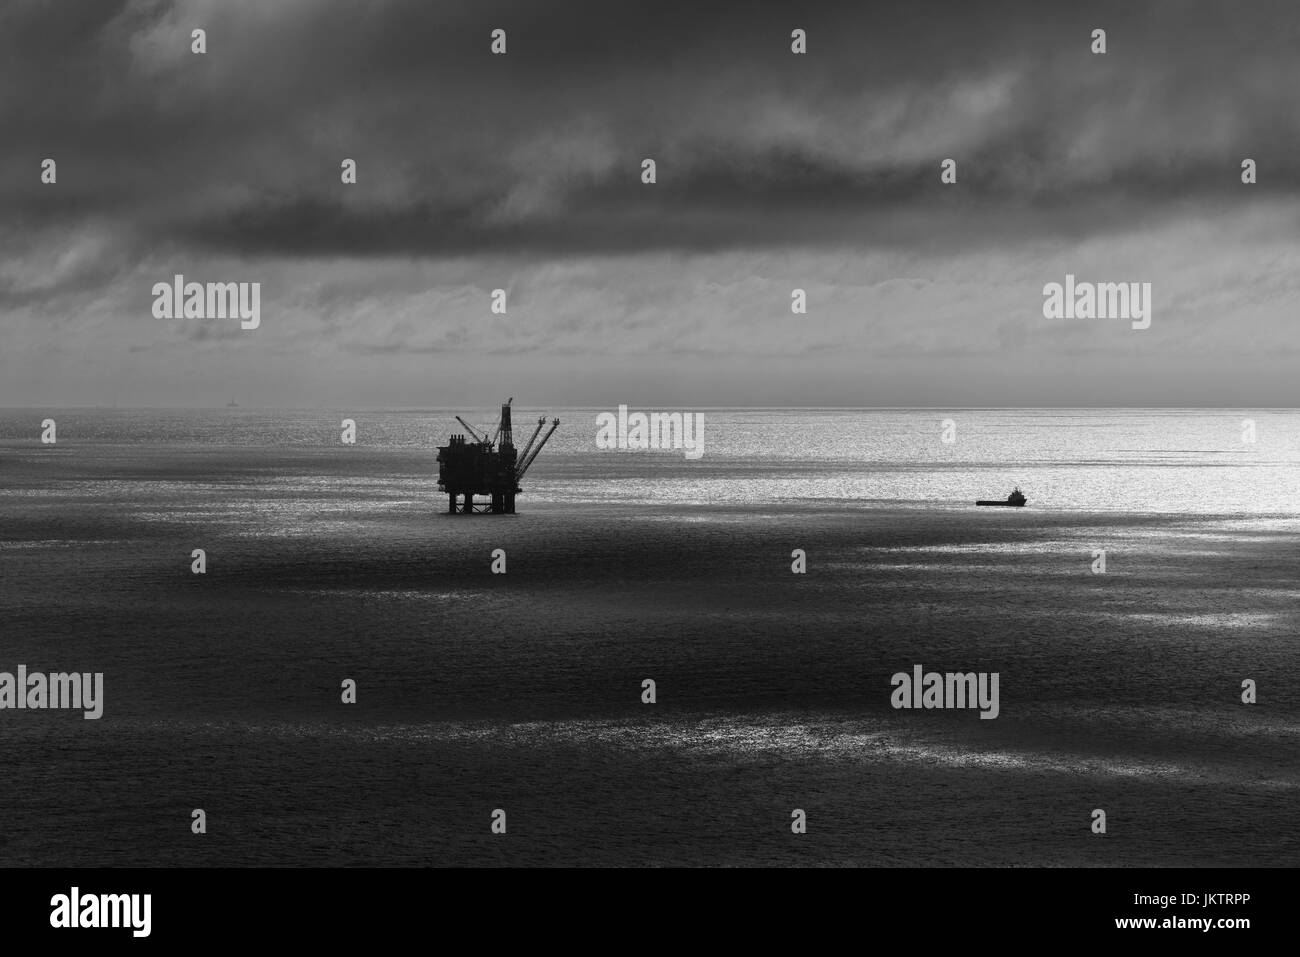 Brae Alpha Nordseeölplattform, Gasanlage. Quelle: LEE RAMSDEN / ALAMY Stockfoto